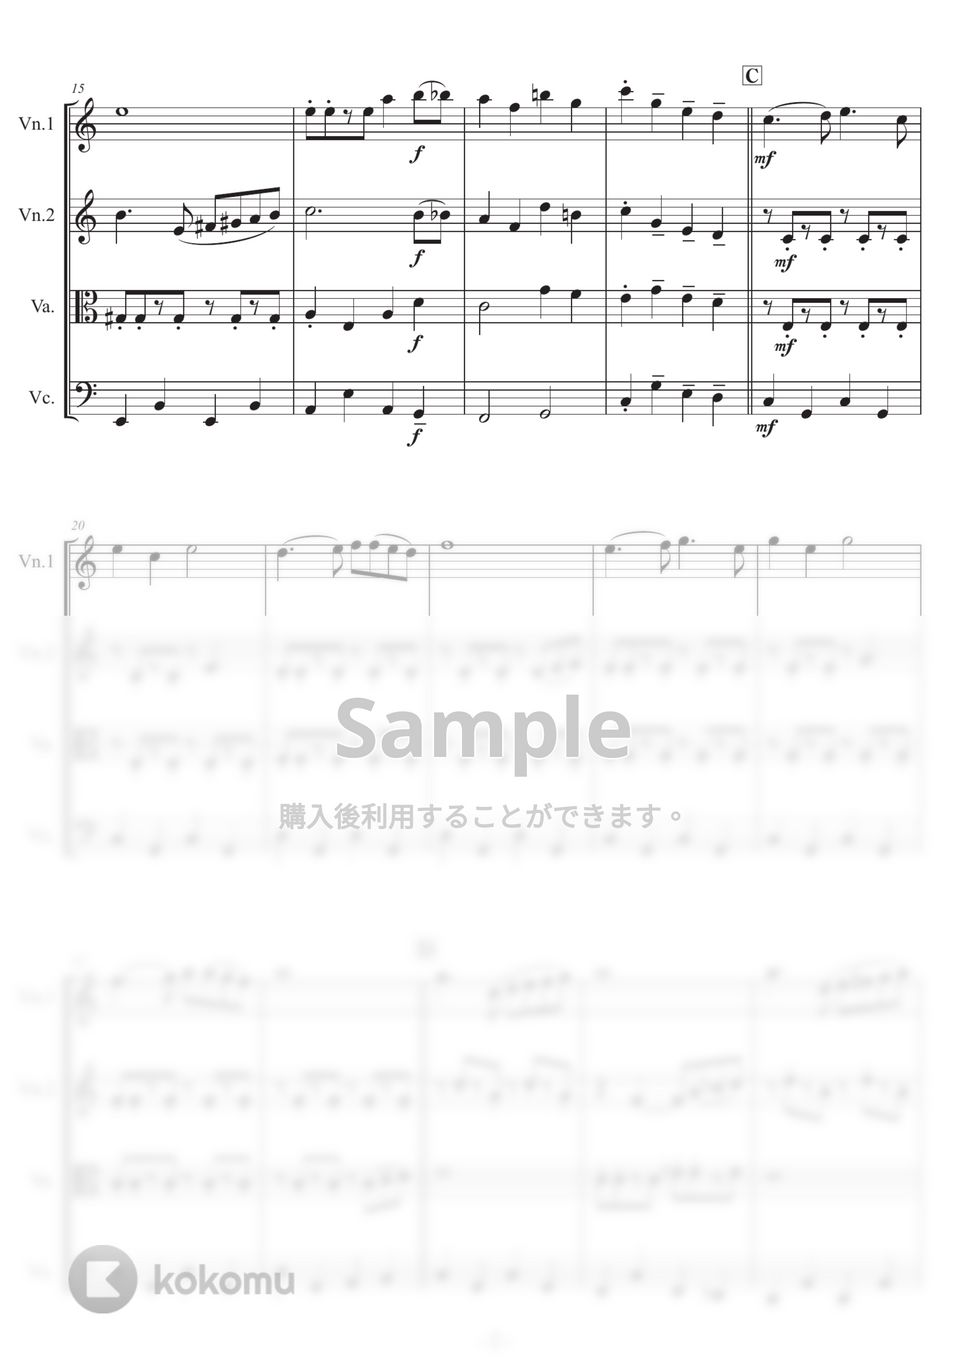 Richard Rodgers - 【弦楽四重奏】ドレミのうた (『サウンド・オブ・ミュージック』より) by 栗原義継